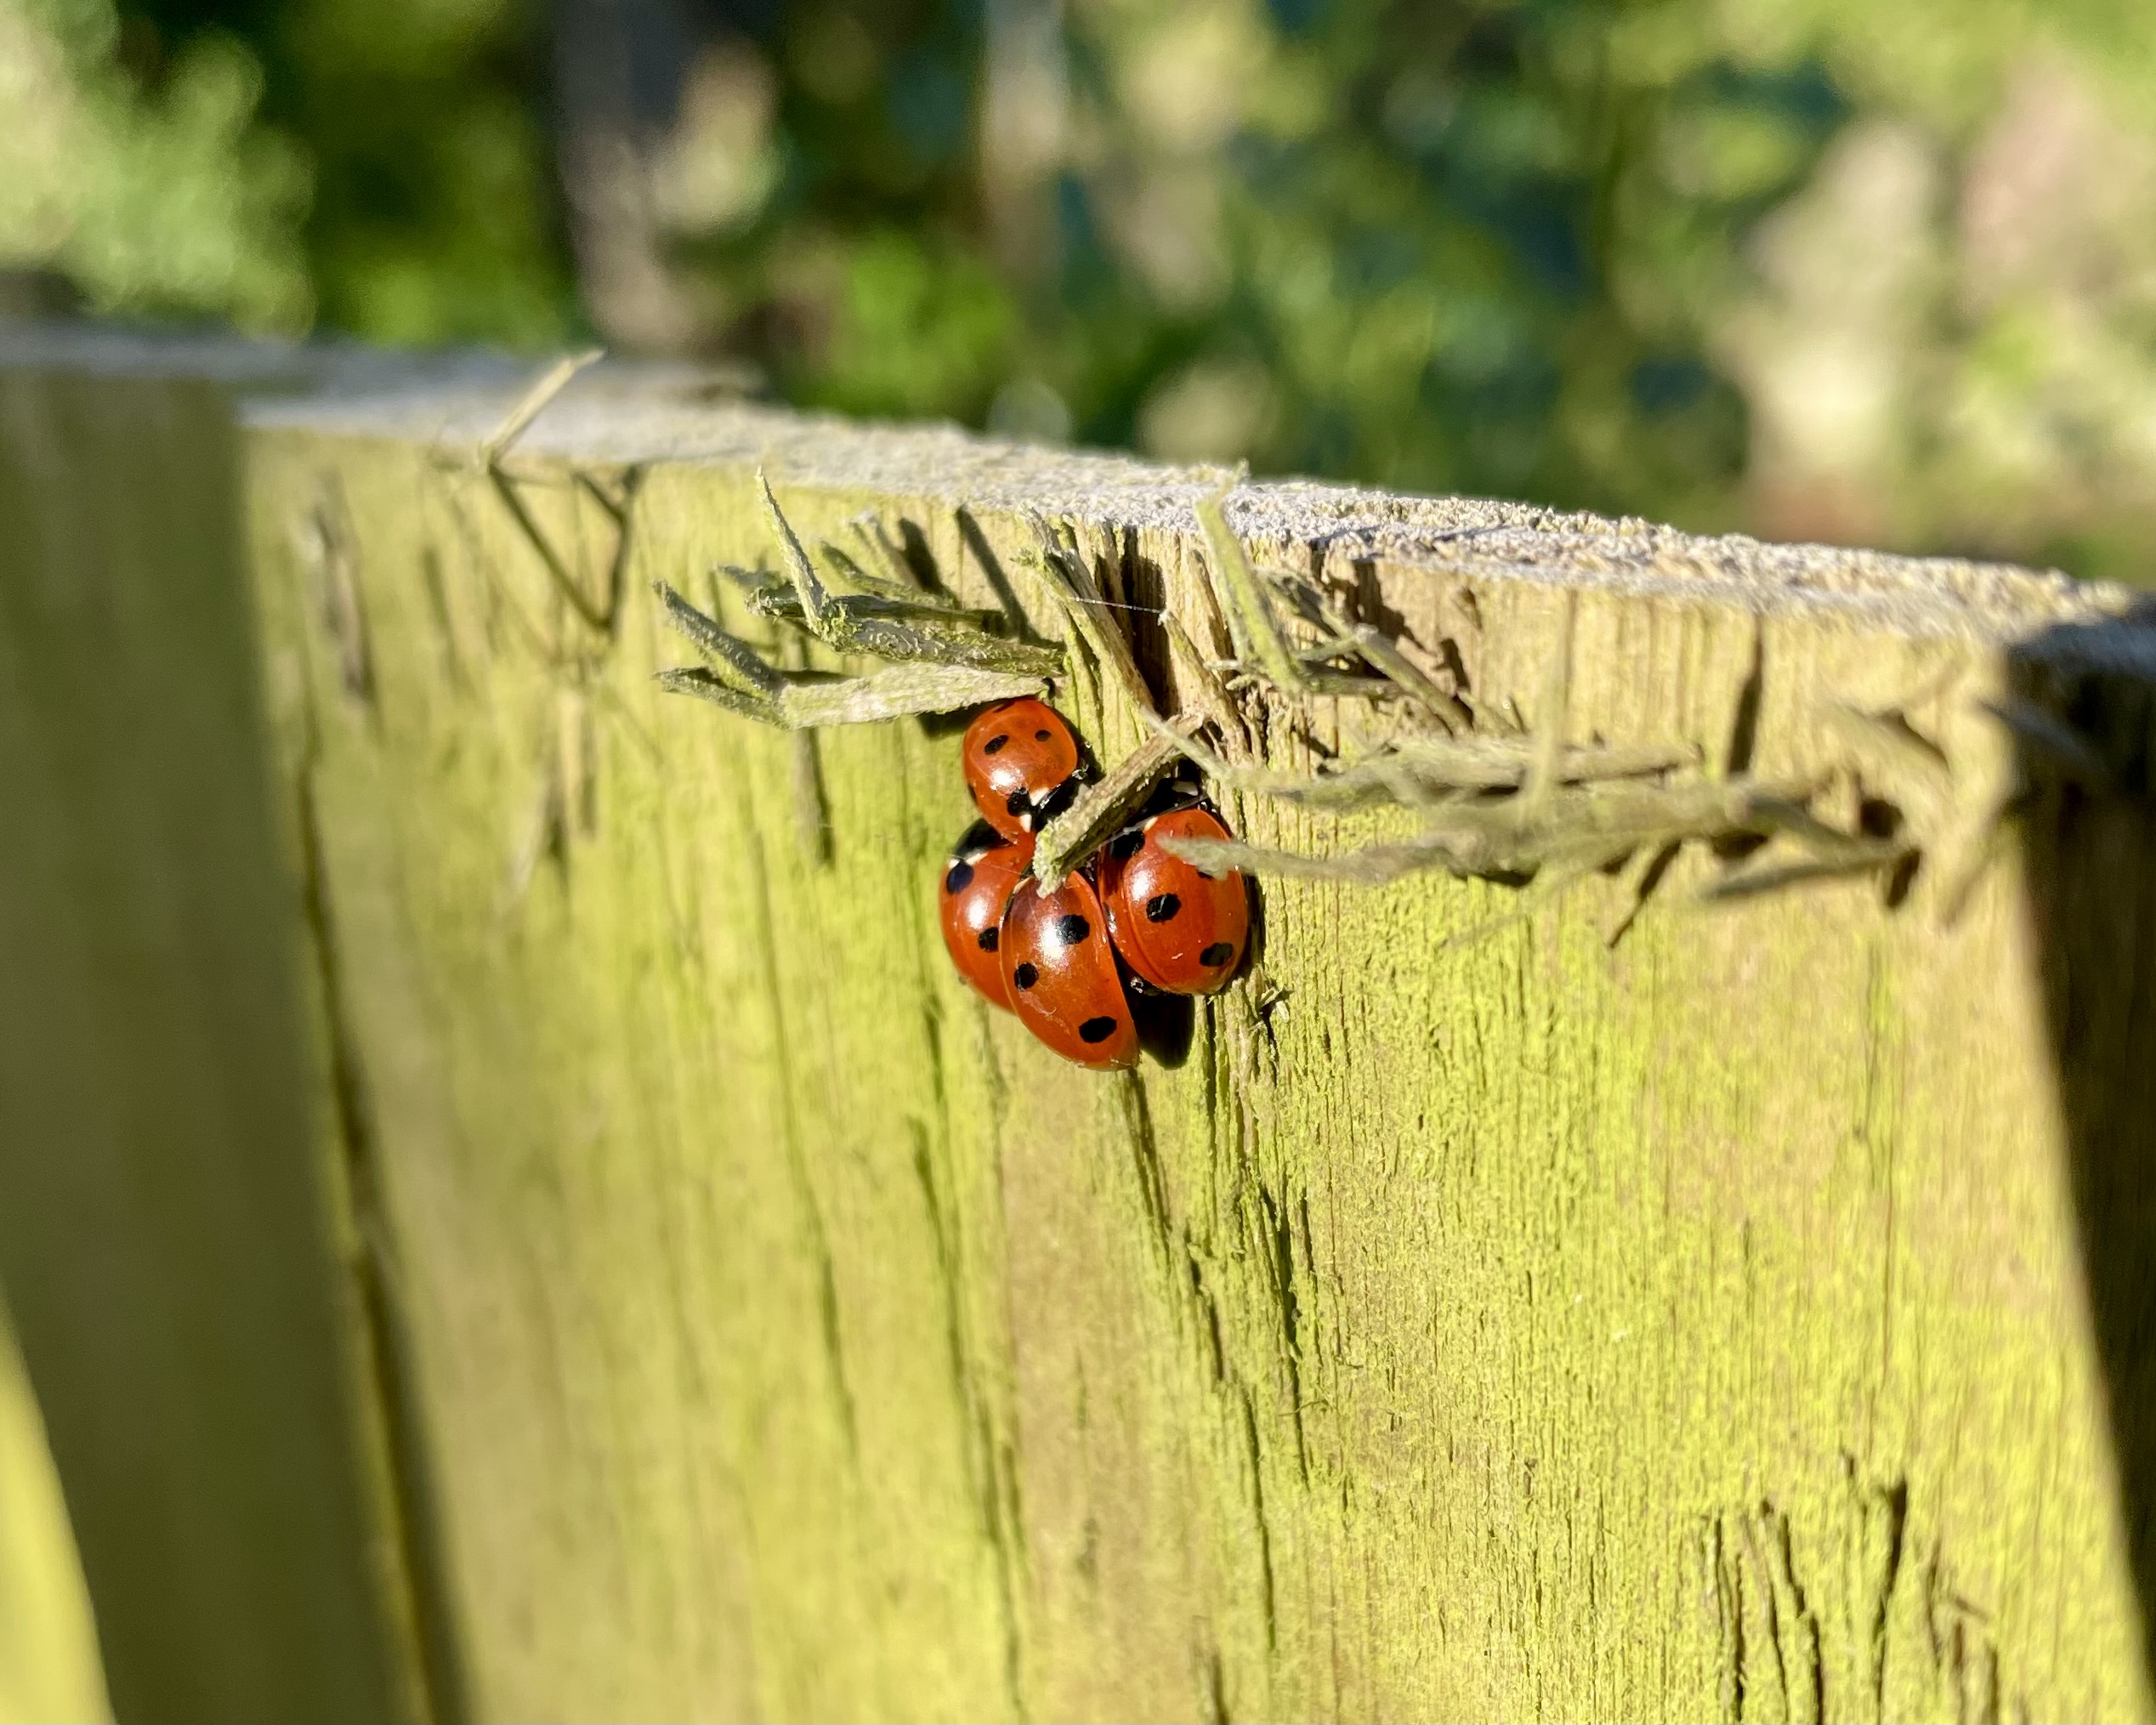 Ladybirds hibernating on a wooden fence